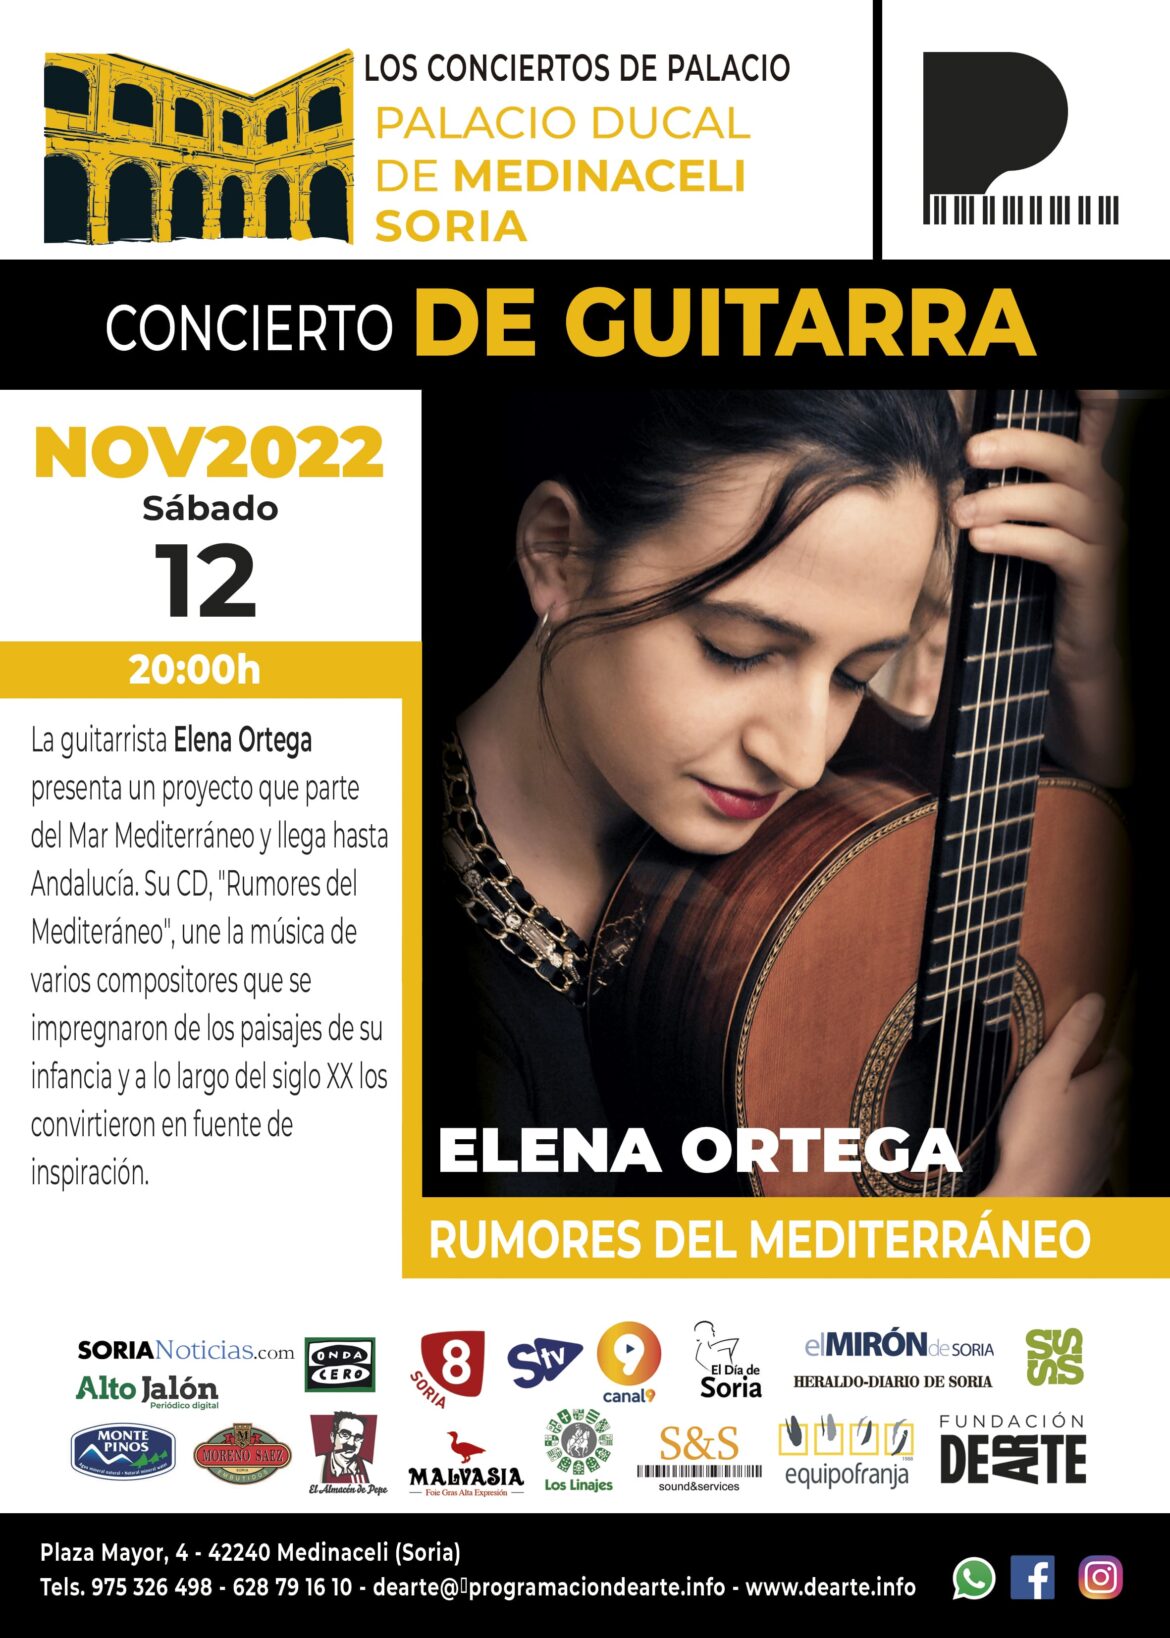 Concierto de guitarra, Elena Ortega